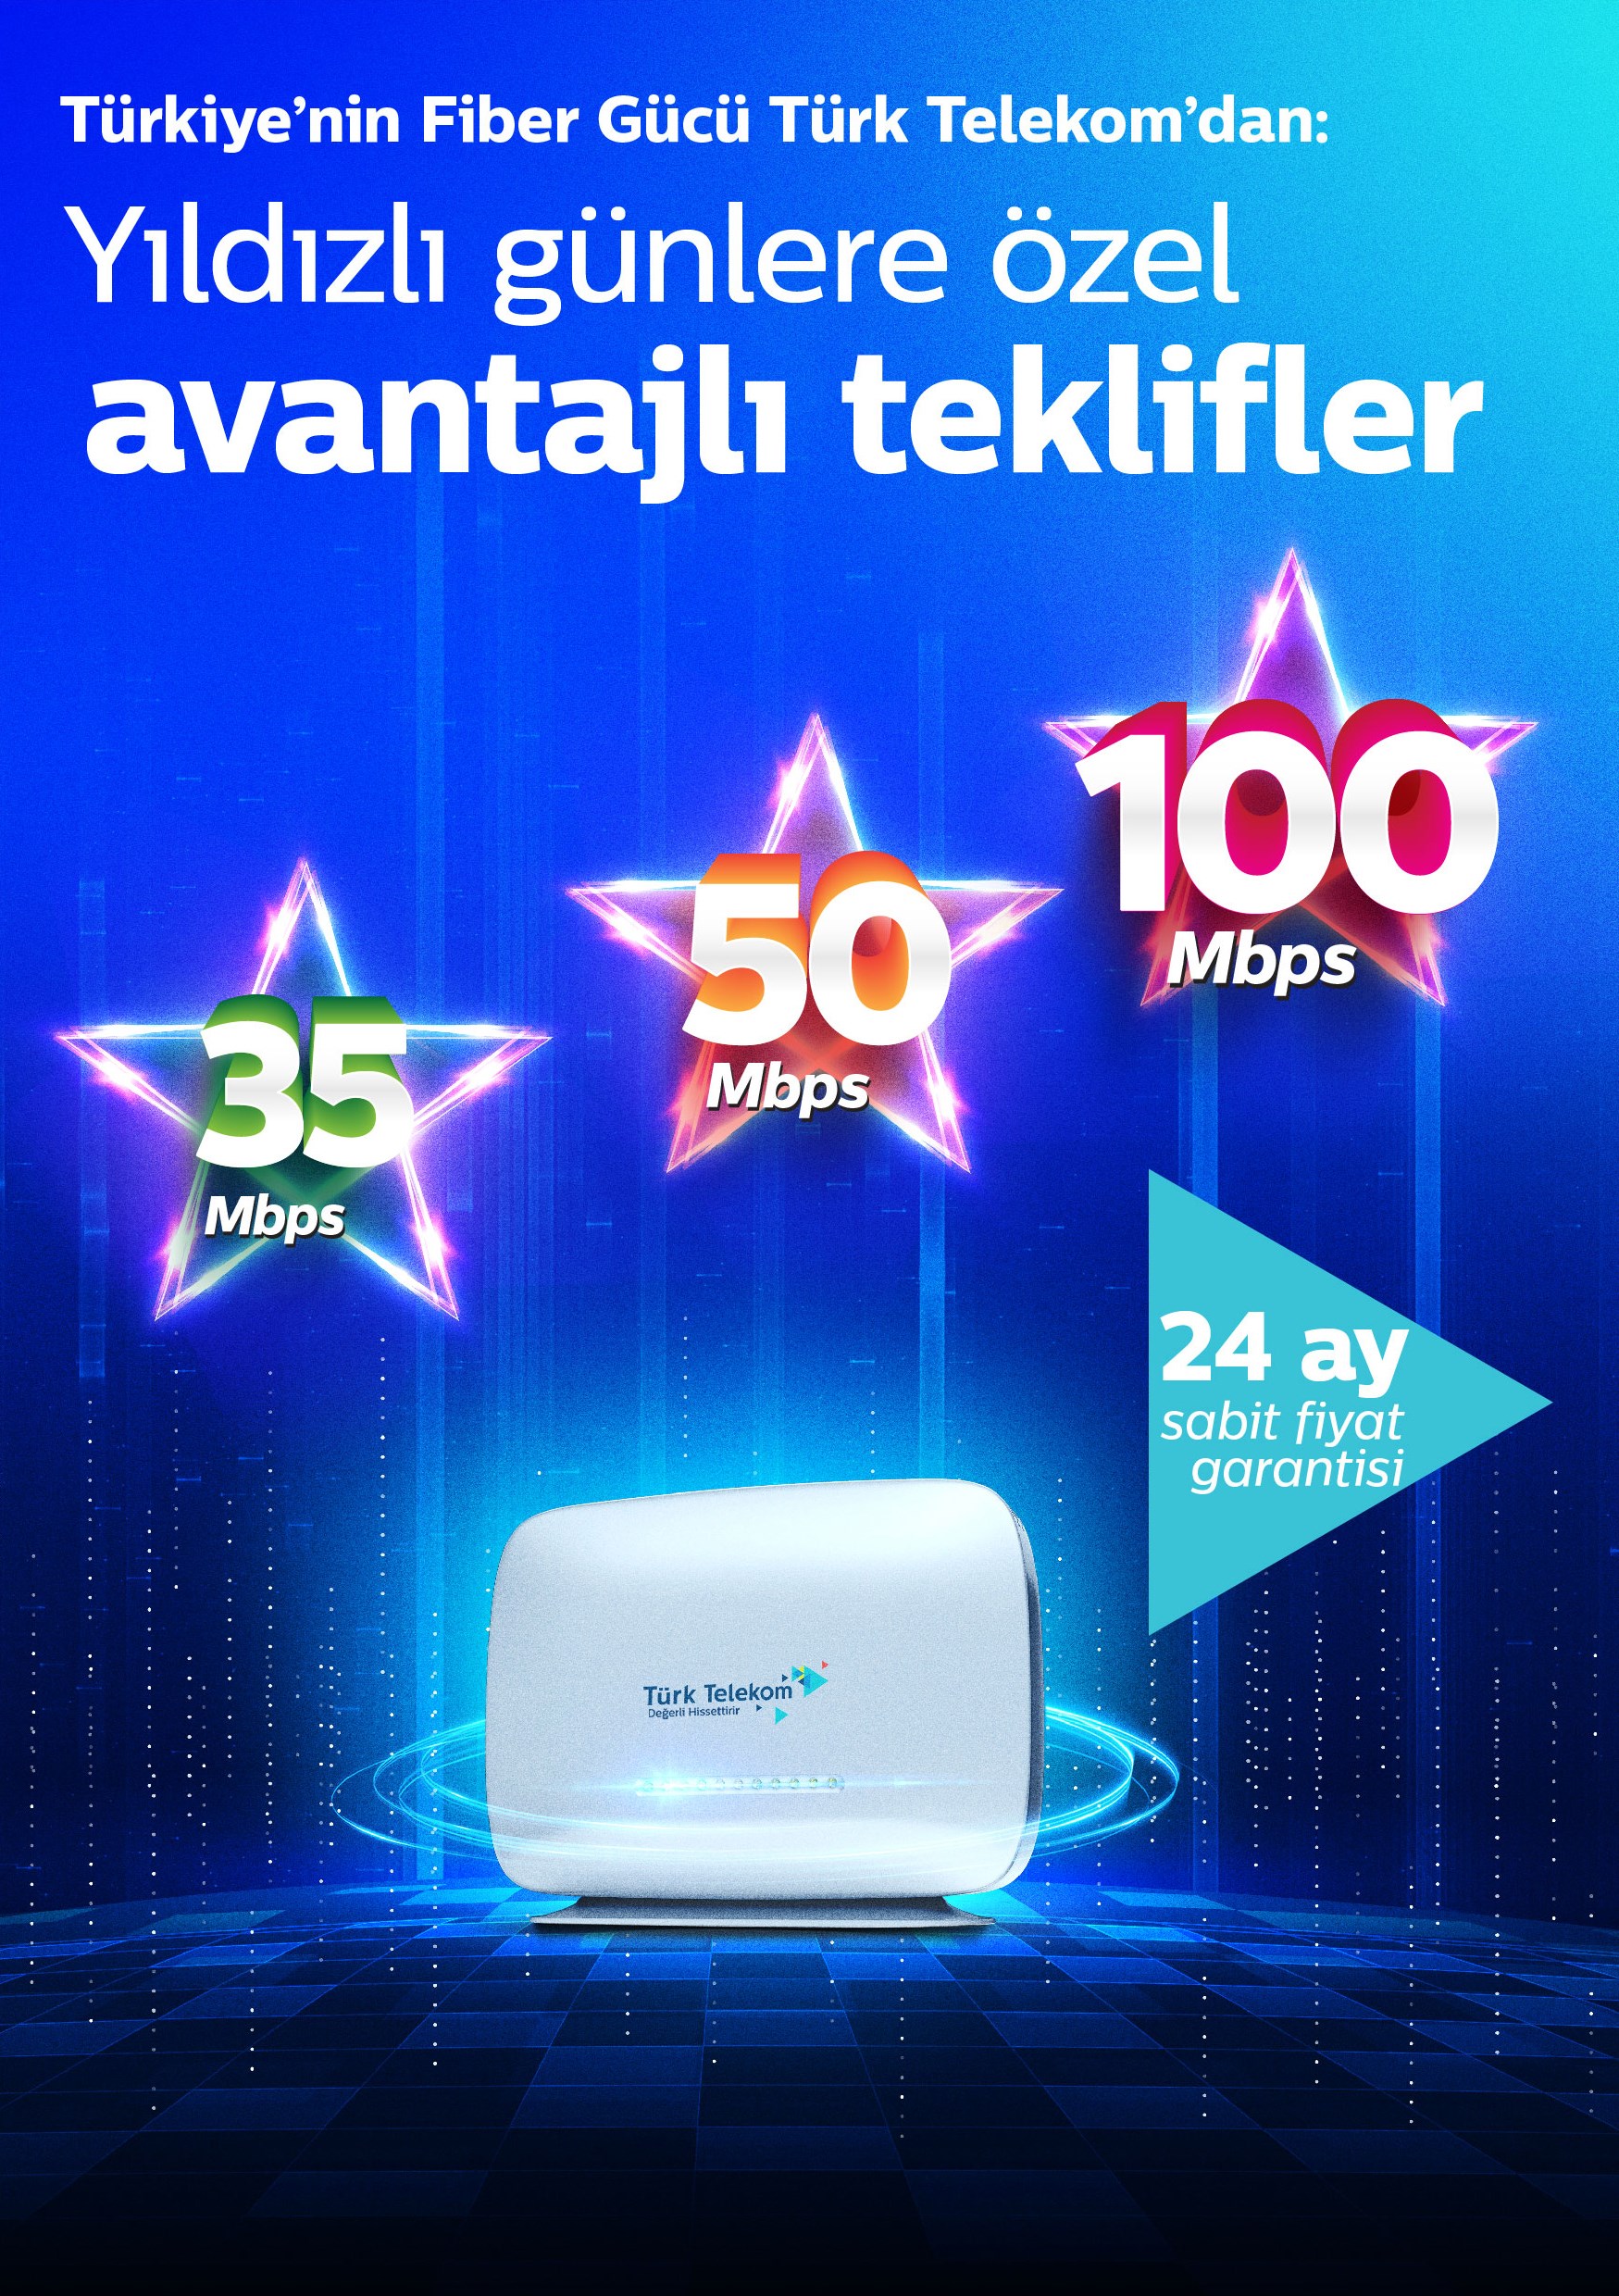 Türk Telekom'dan Yıldızlı Günler fiber internet kampanyası